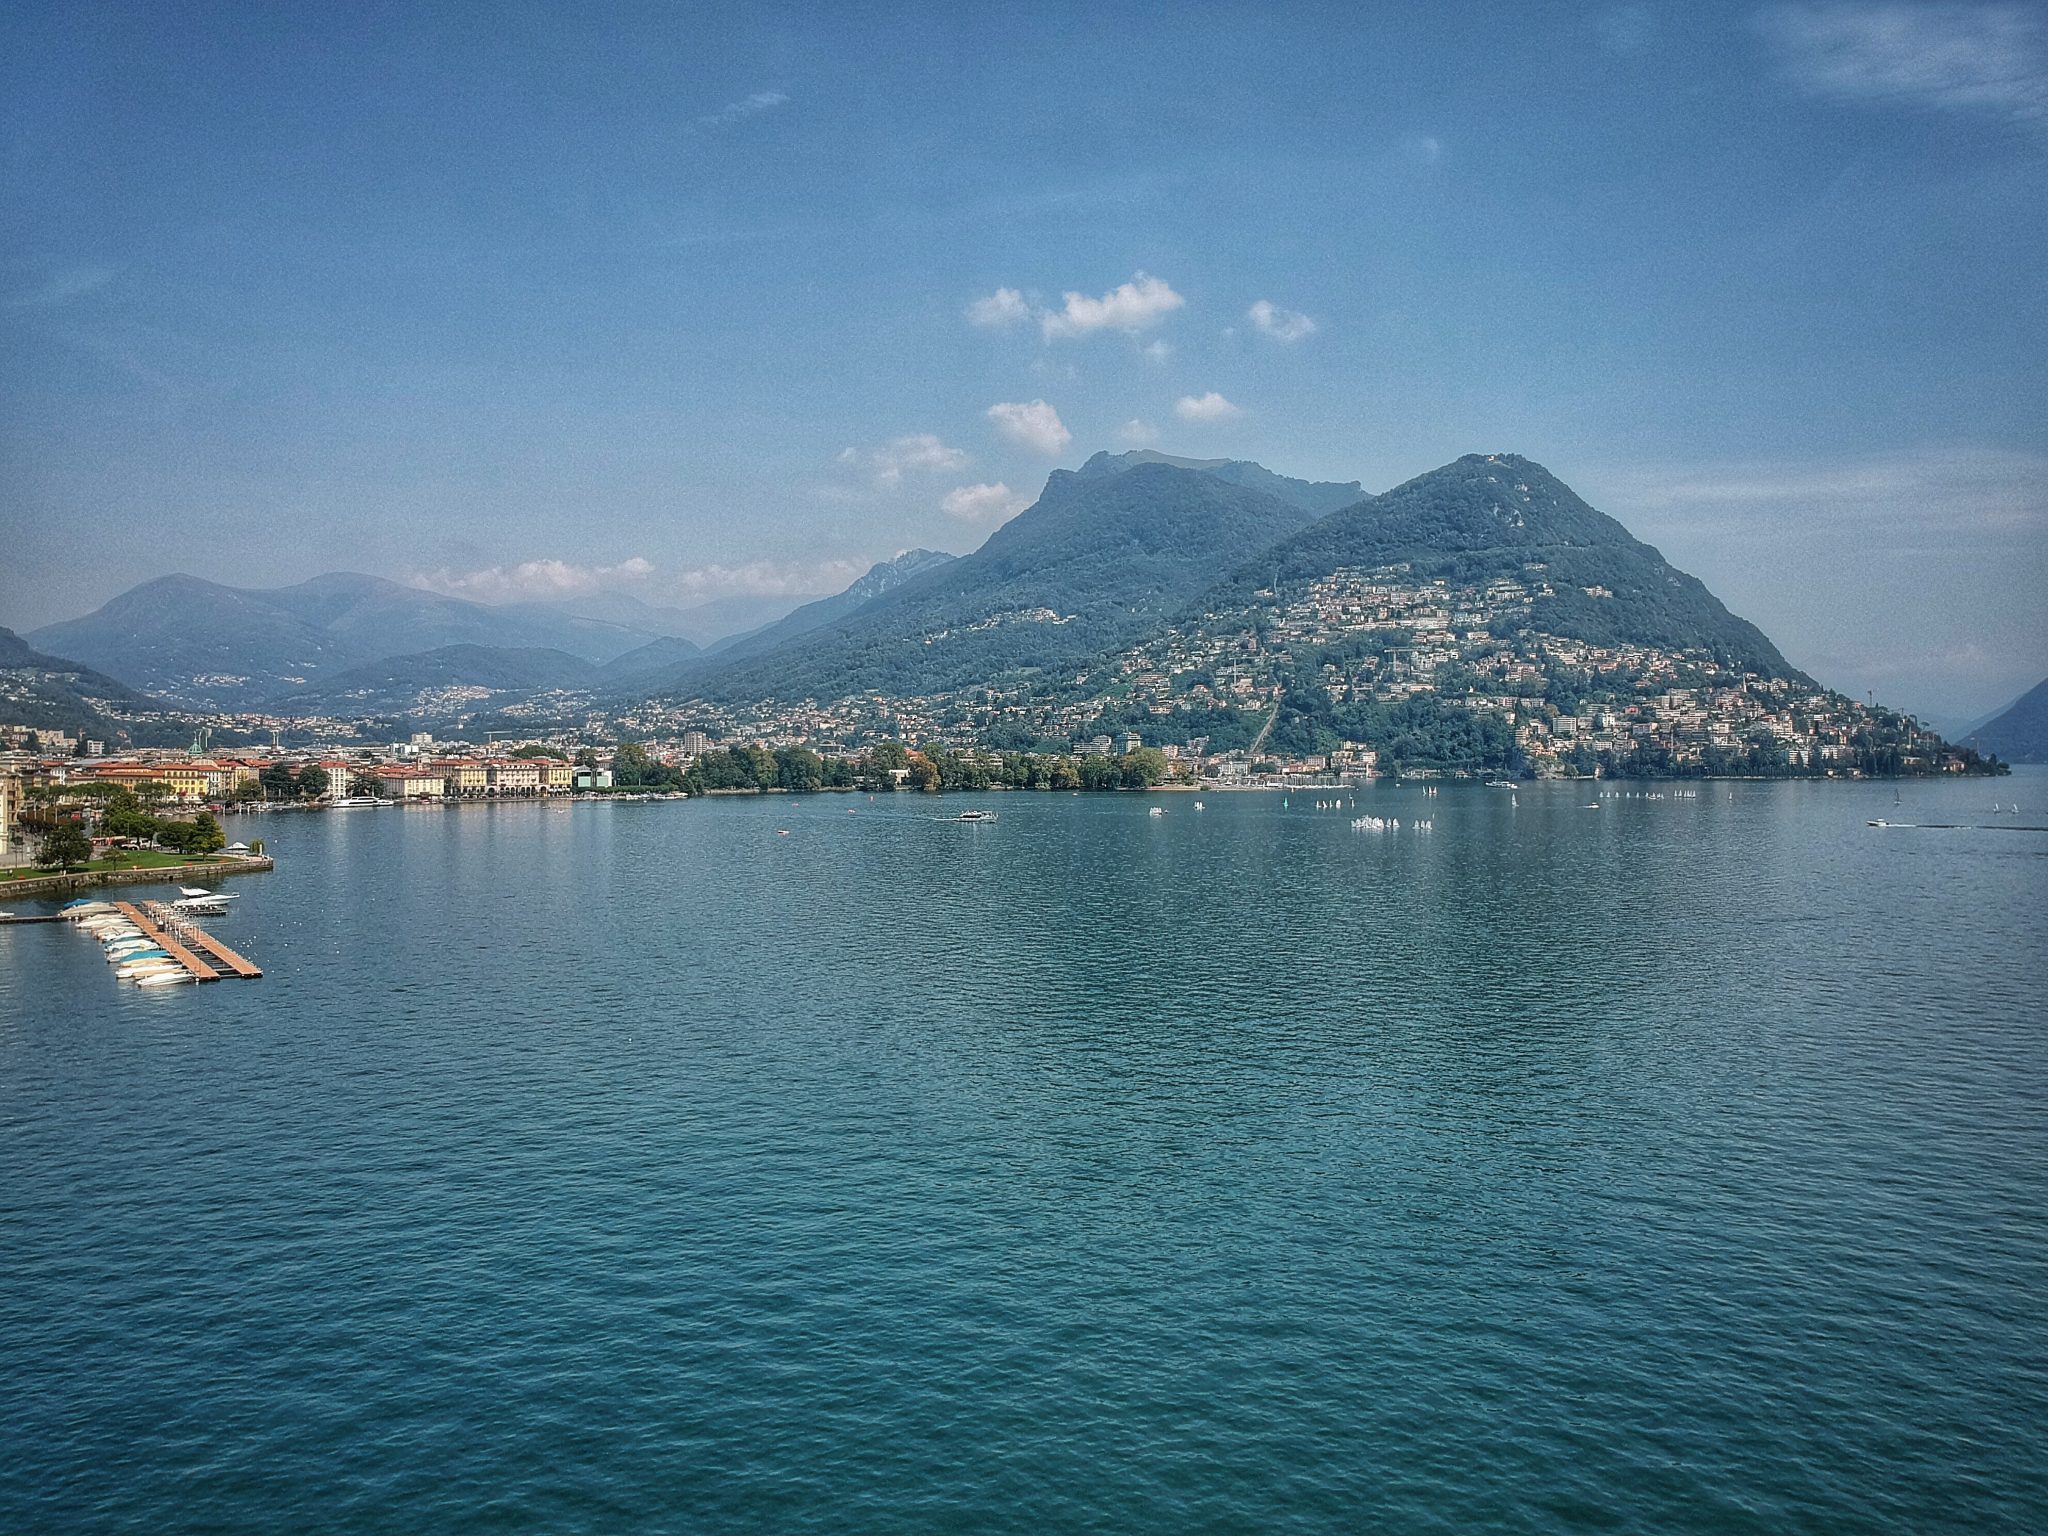 Weekend at Lake Lugano